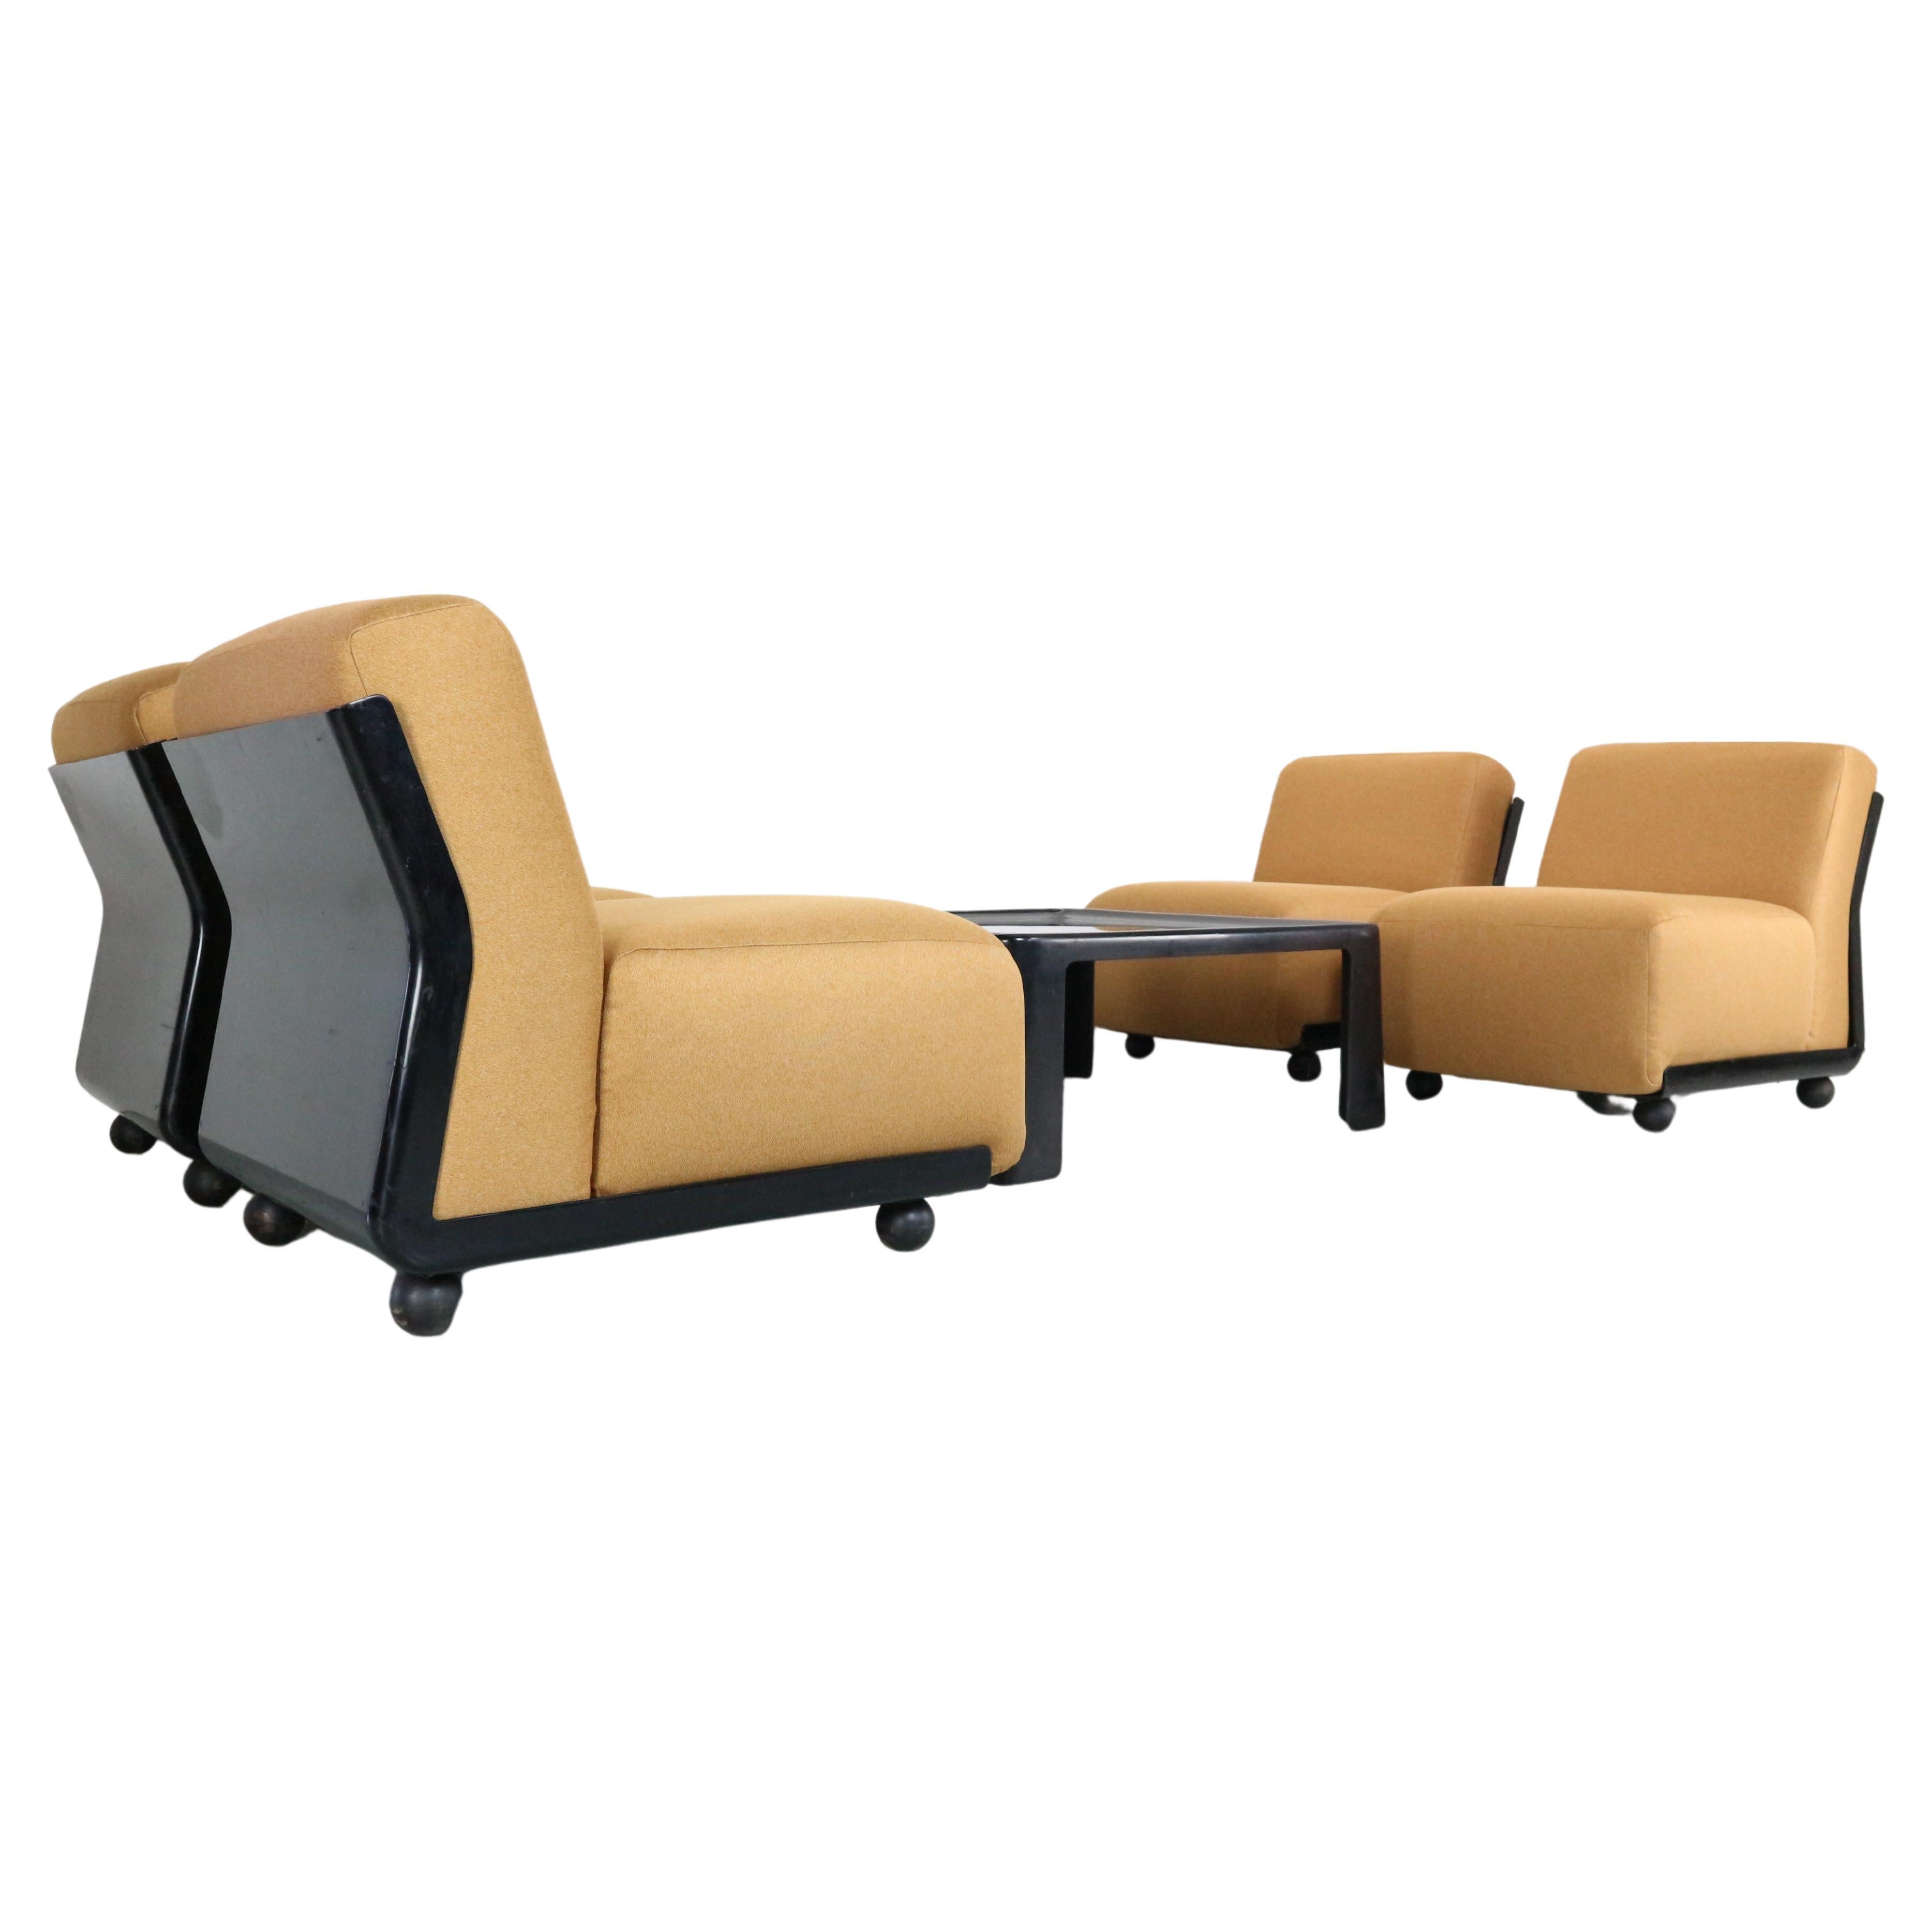 Quatre chaises amanta model 24 conçues par Mario Bellini pour C&B Italia. Fabriquées au début des années 1970, elles se distinguent de la chaise Amanta standard par leur étroitesse et l'absence de la fine encoche verticale au milieu du dossier. Les